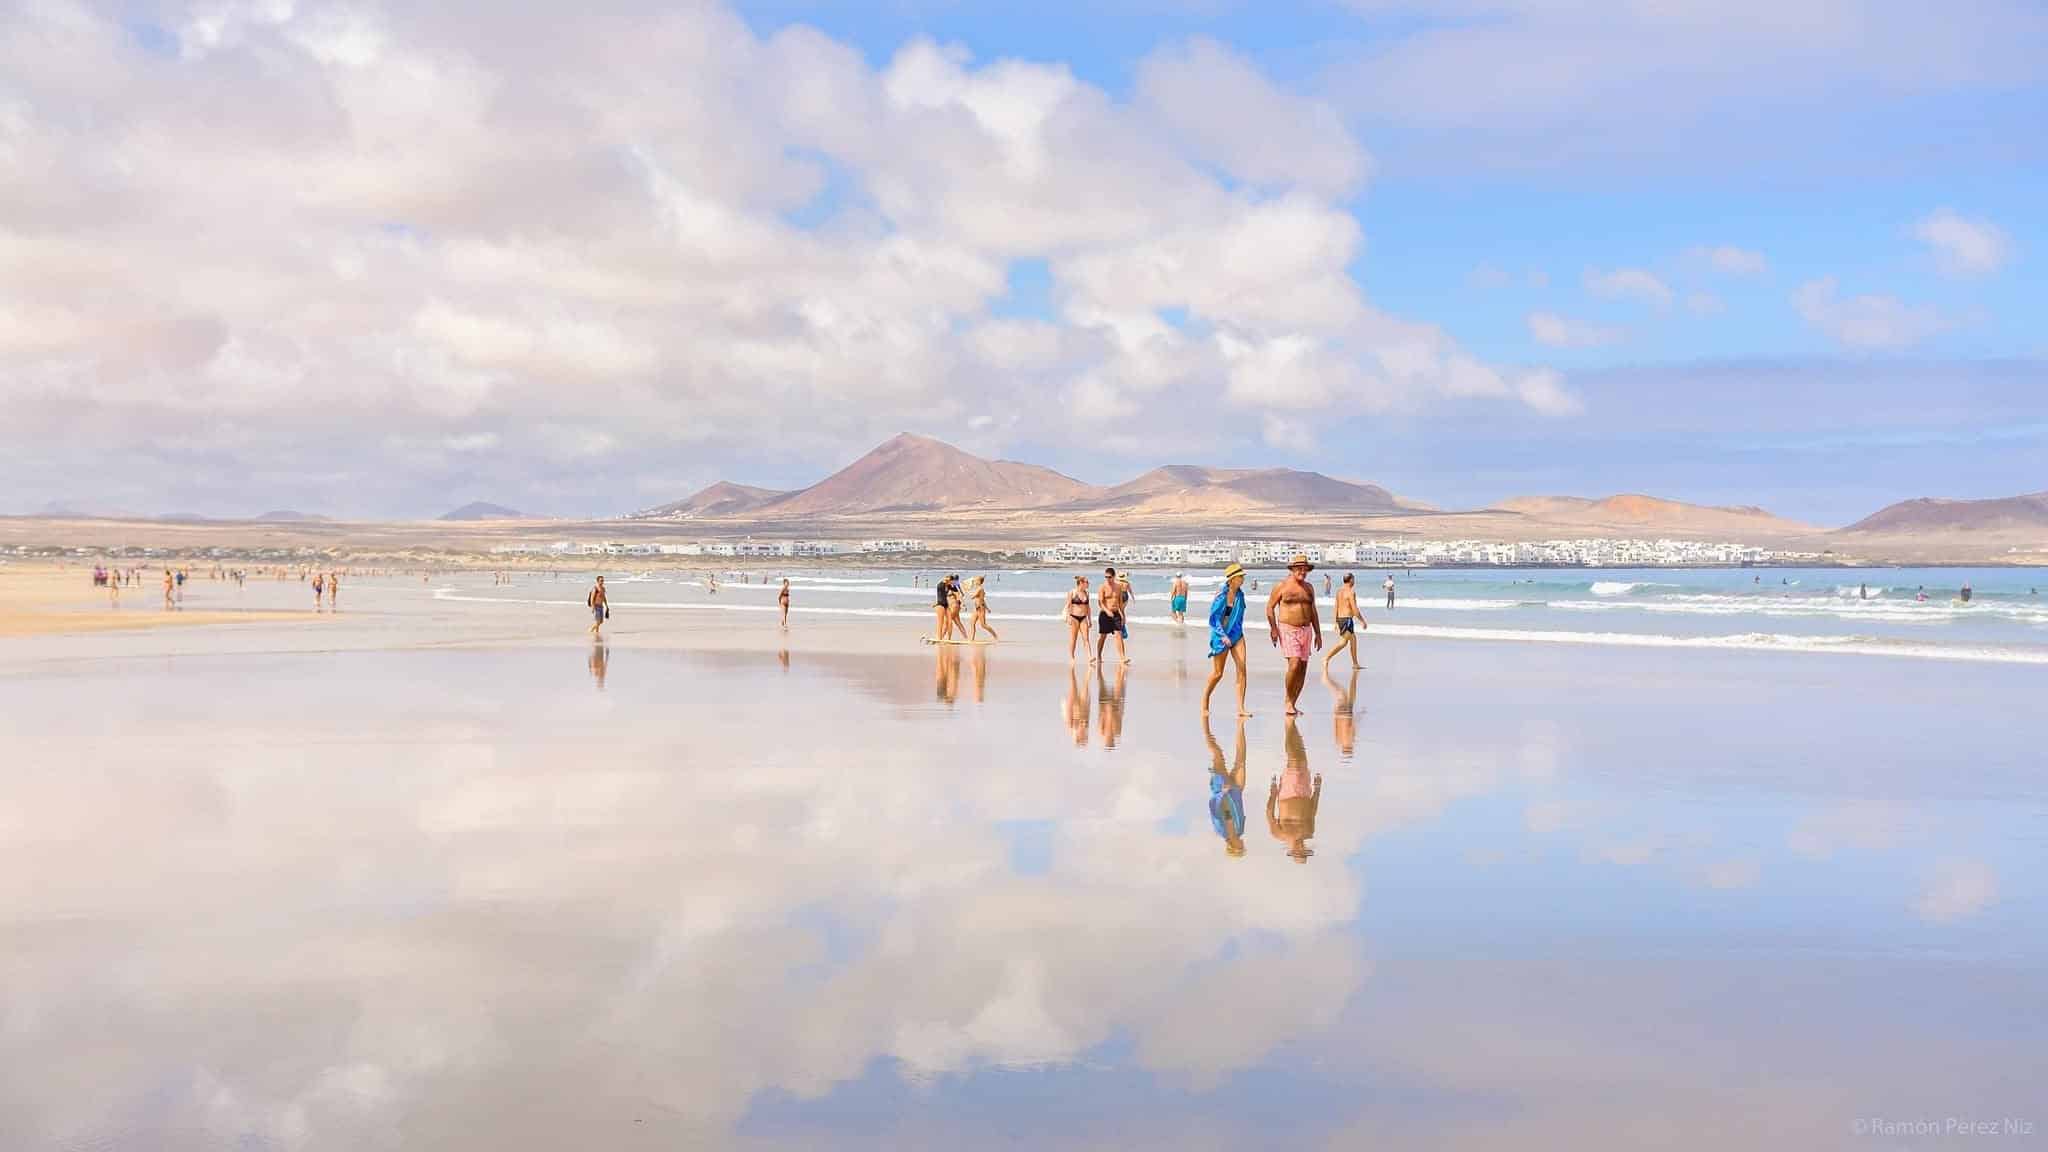 Famara, paseo por la orilla con marea vacía. Fotografía: Ramón Pérez Niz.